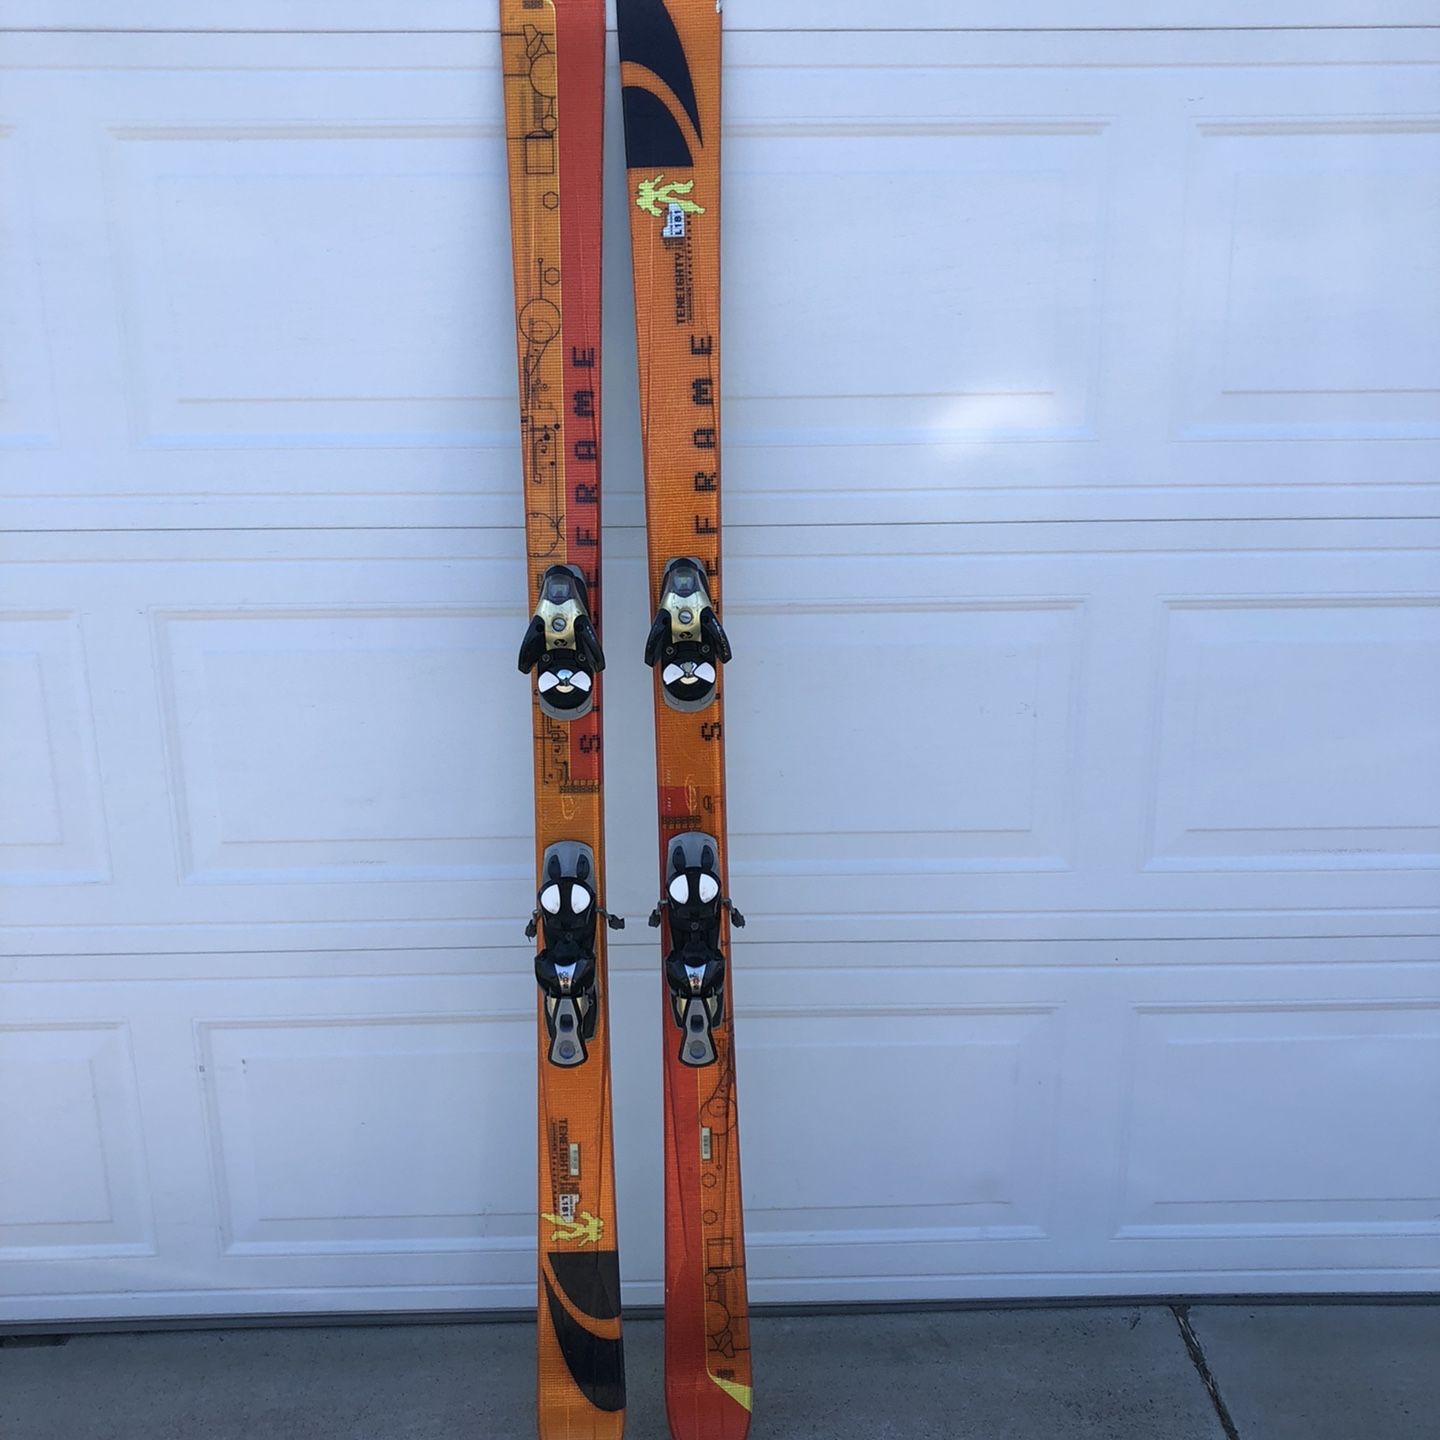 Skis 181 cm Salomon Twin w/S810 ti bindings for Sale in Jose, CA - OfferUp